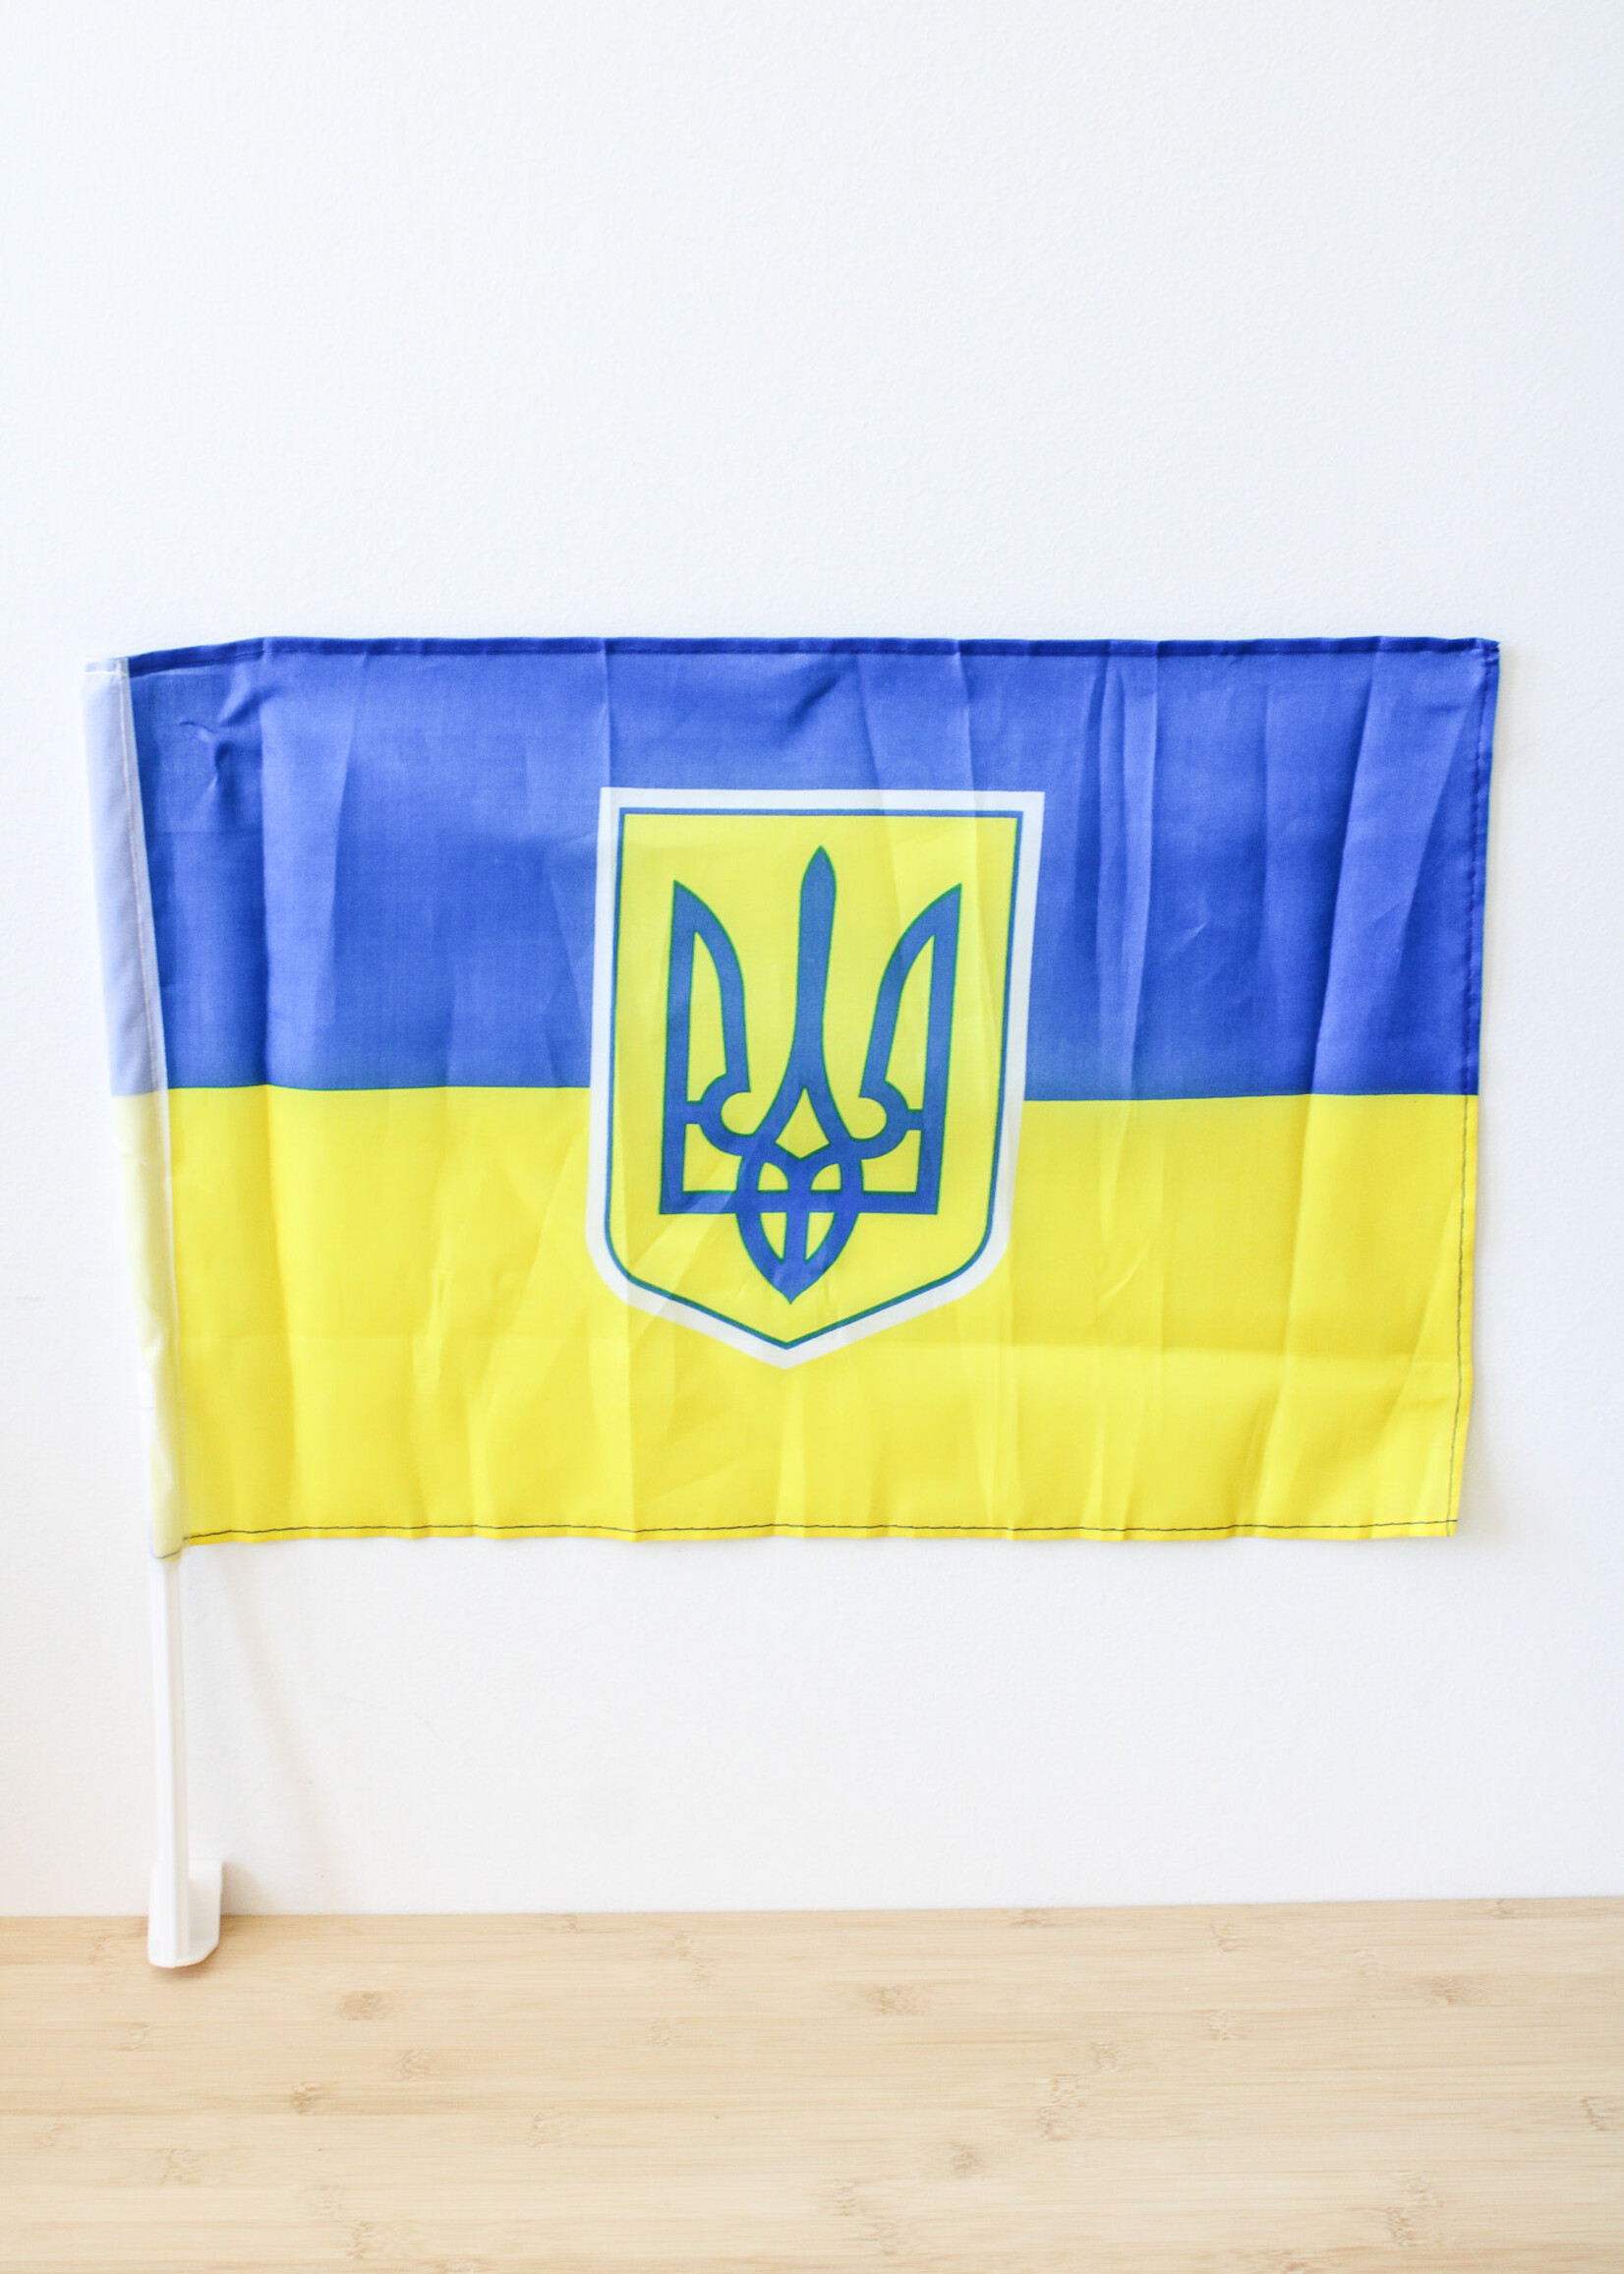 FLAG Ukrainian flag with Car bracket, small